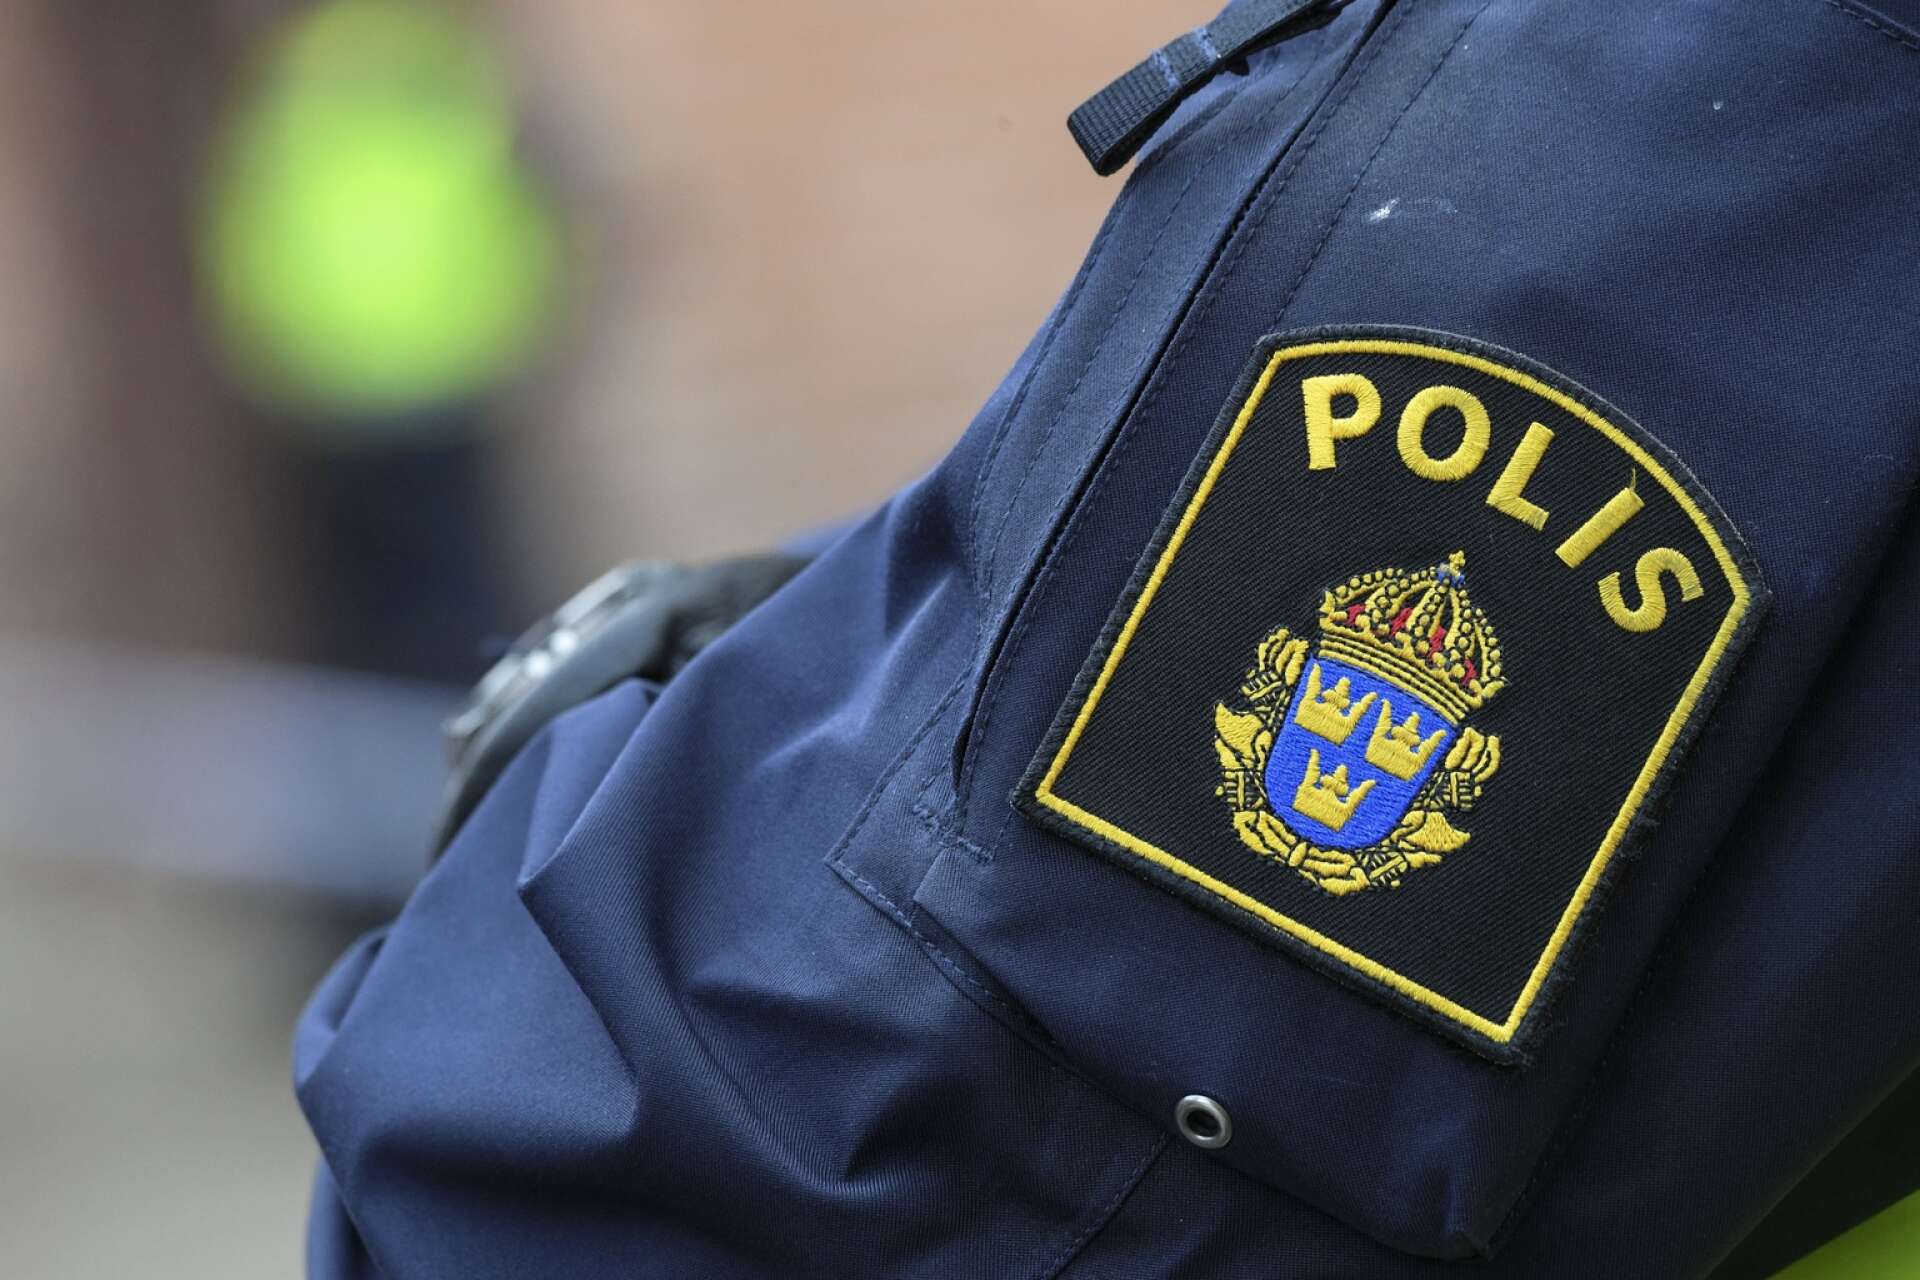 En man och en kvinna i trettioårsåldern rapporterades under måndagskvällen i Säffle för innehav av narkotika.